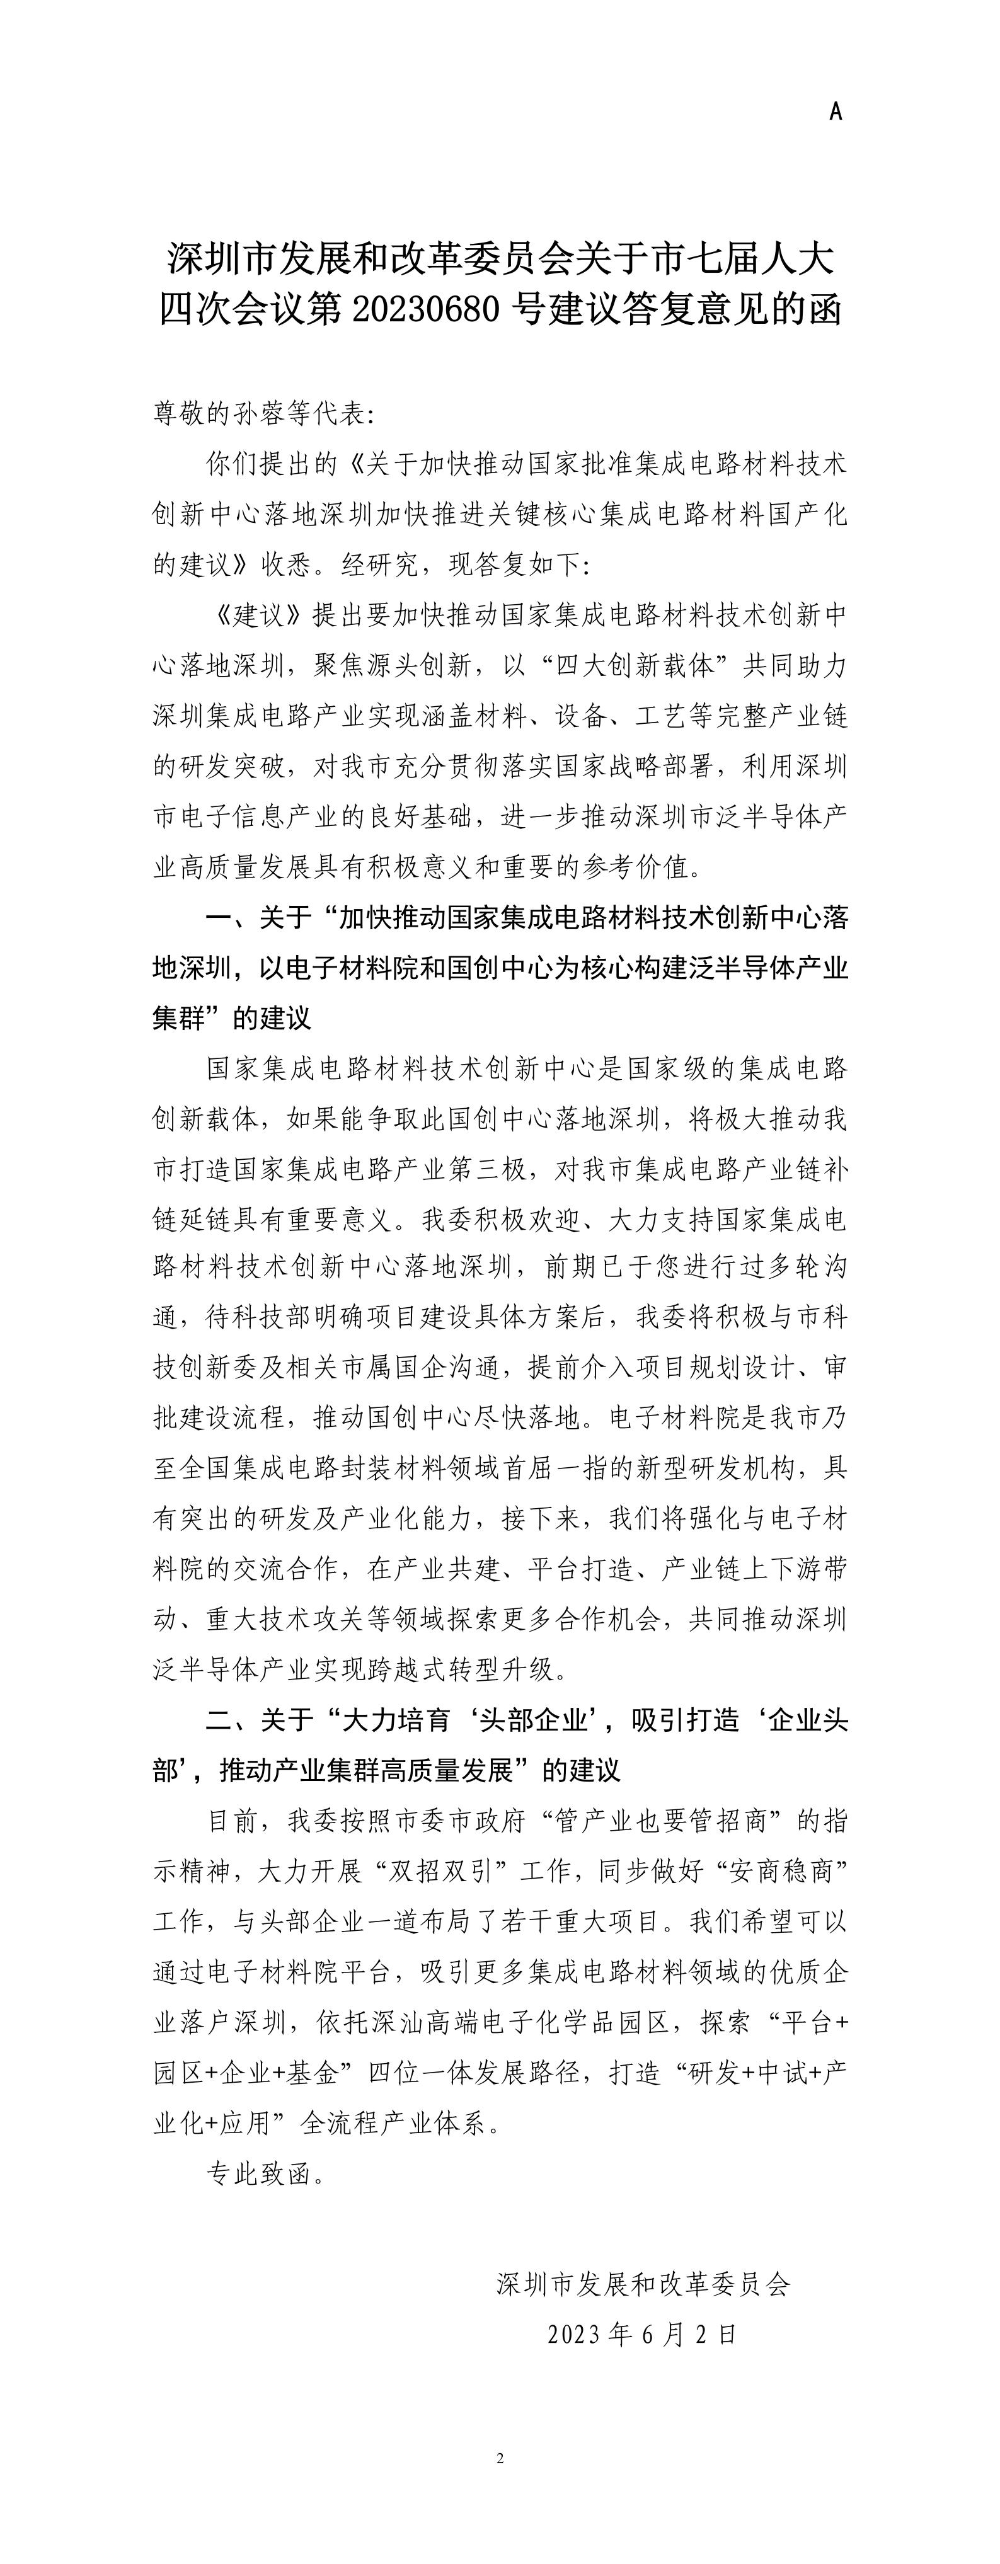 深圳市发展和改革委员会关于市七届人大四次会议第20230680号建议答复意见的函.jpg